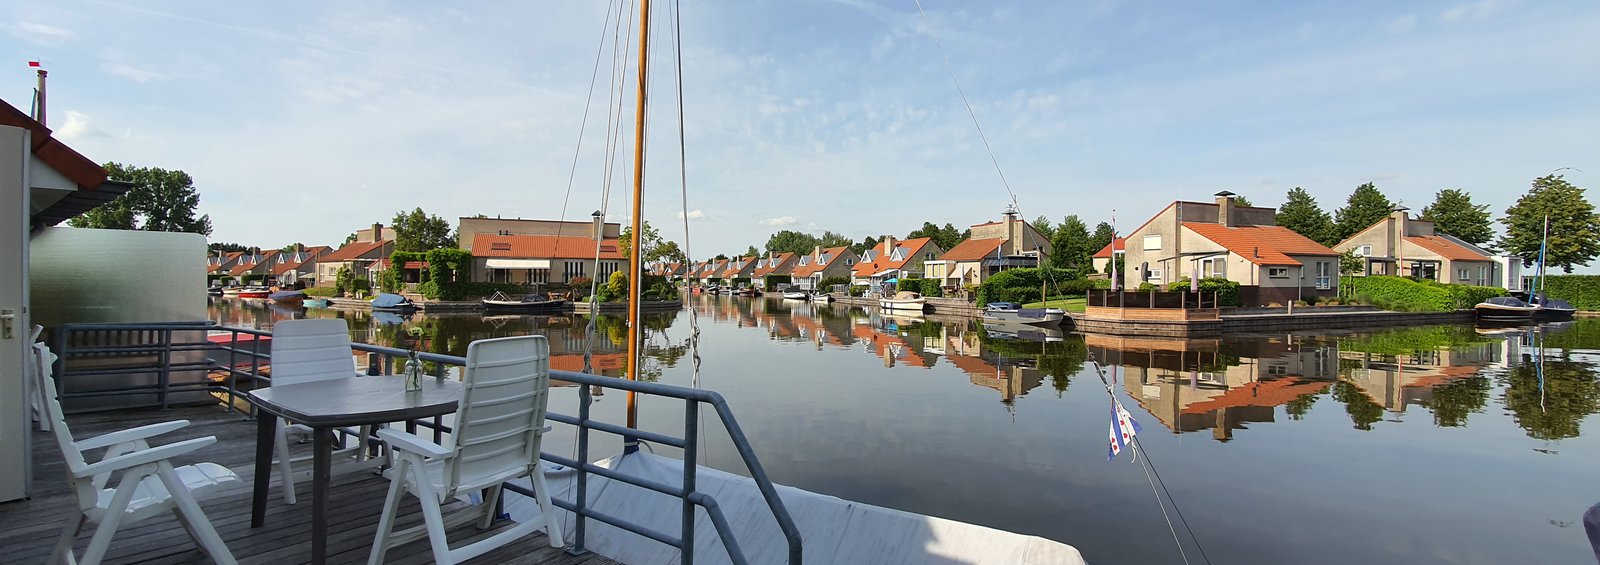 Ferienpark am Wasser in Holland